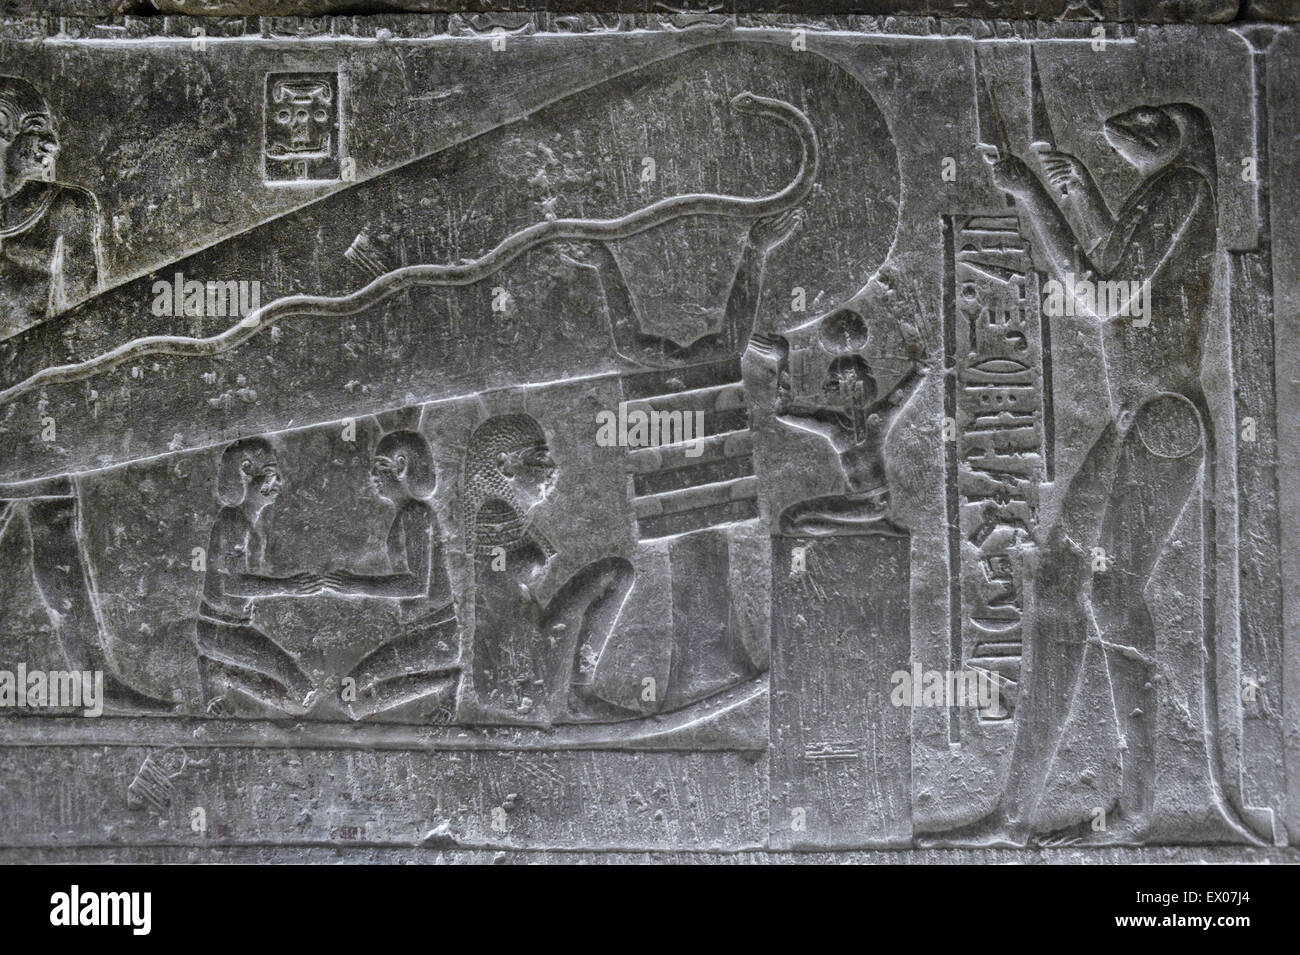 fleuve de jade - Le fleuve de jade - Page 2 Denderah-egypte-temple-dedie-a-la-deesse-hathor-voir-de-soi-disant-les-lampes-de-denderah-en-reliefs-a-l-interieur-du-temple-ex07j4